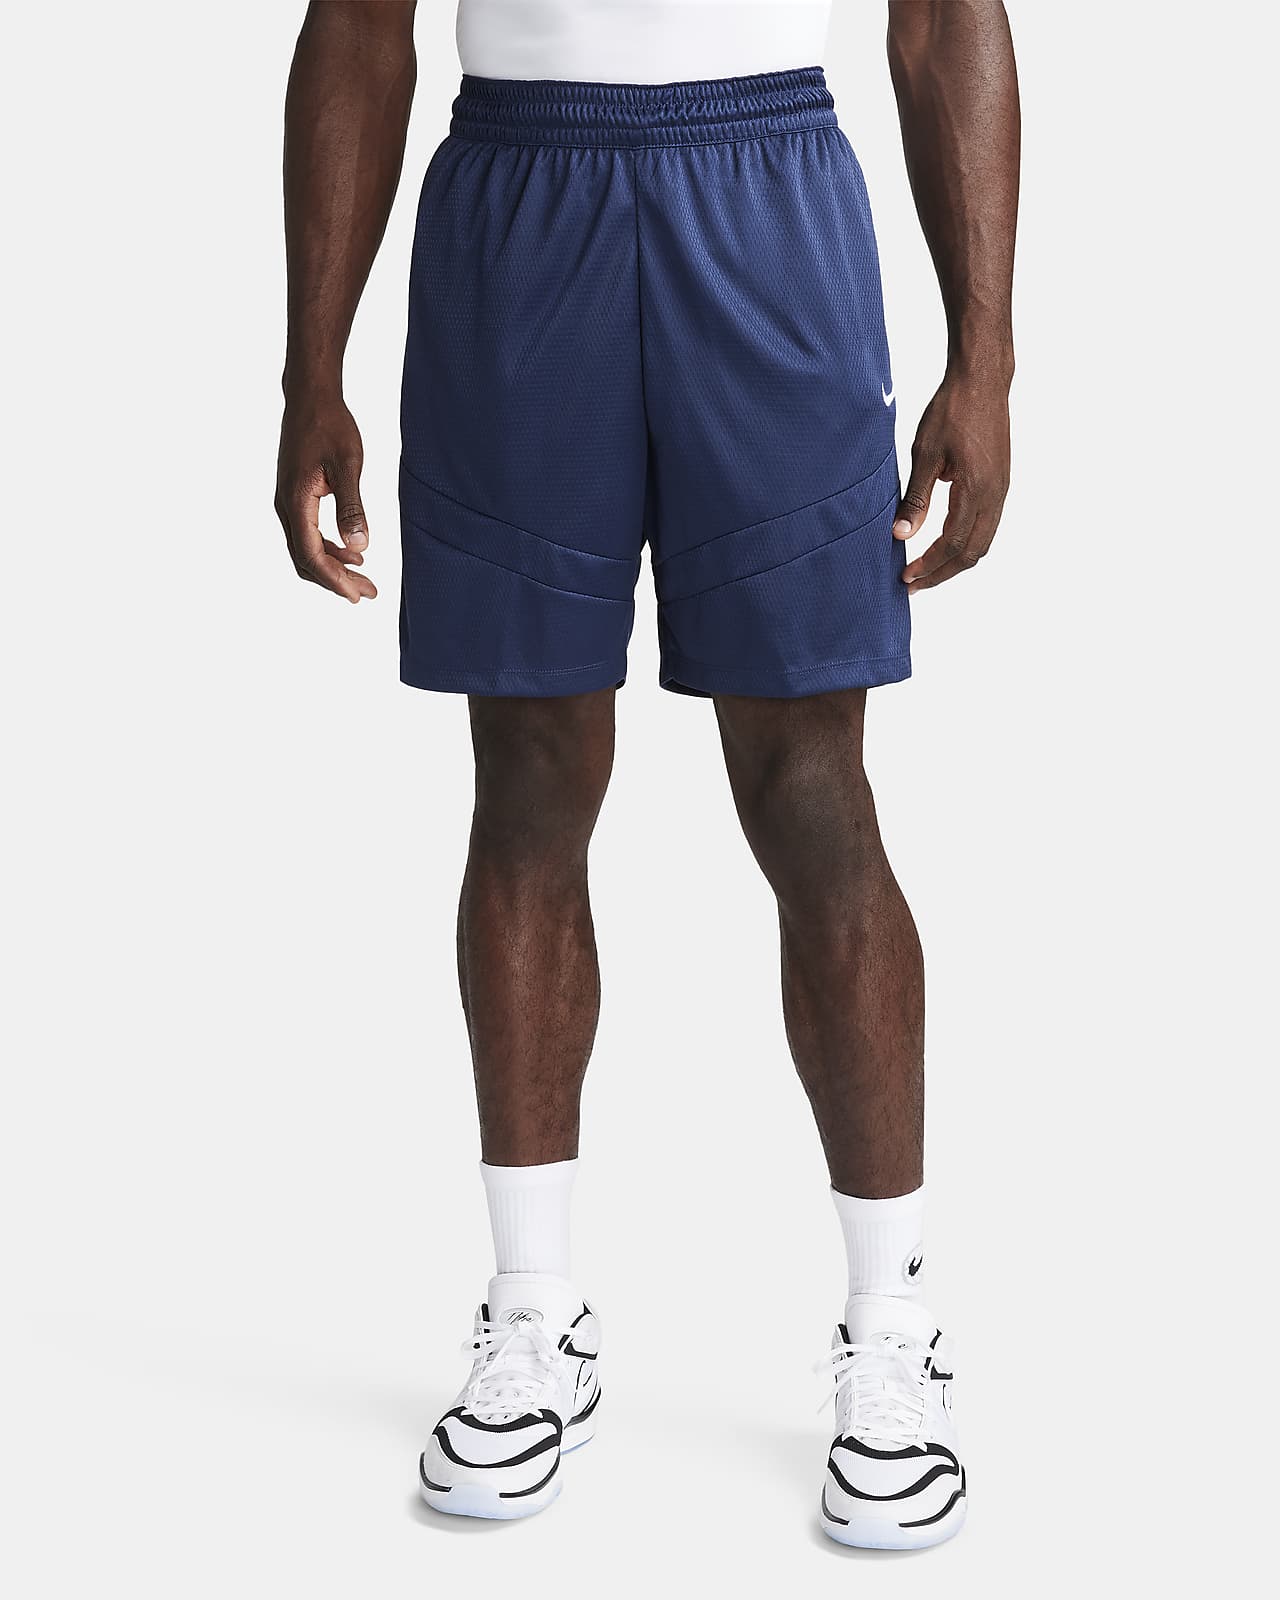 Nike Icon Dri-FIT 20 cm-es férfi kosárlabdás rövidnadrág